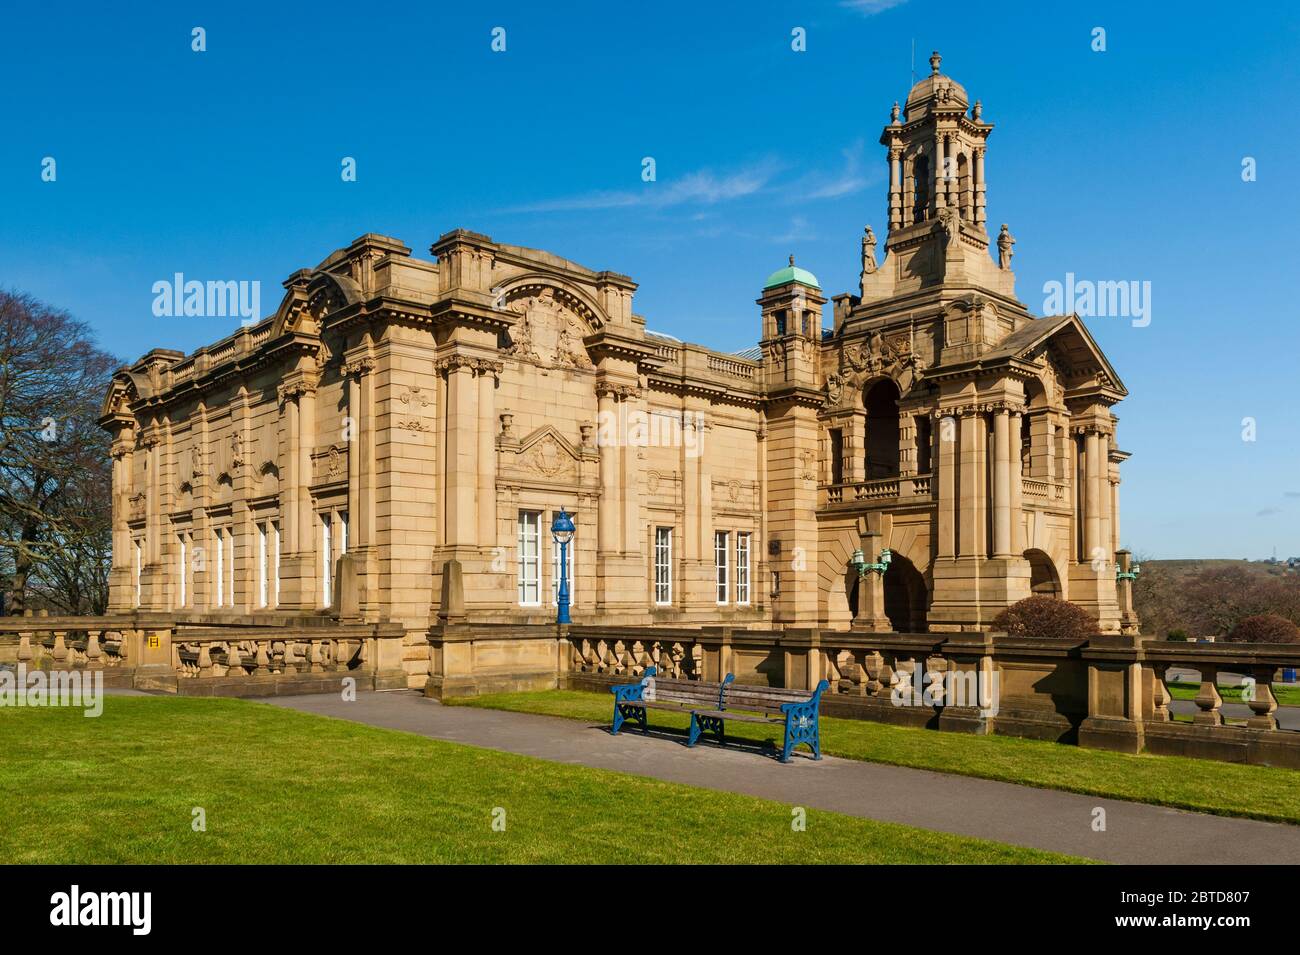 Galerie d'art civique de Cartwright Memorial Hall ensoleillée (grand bâtiment historique abritant des œuvres d'art) - pittoresque Lister Park, Bradford, Angleterre, Royaume-Uni. Banque D'Images